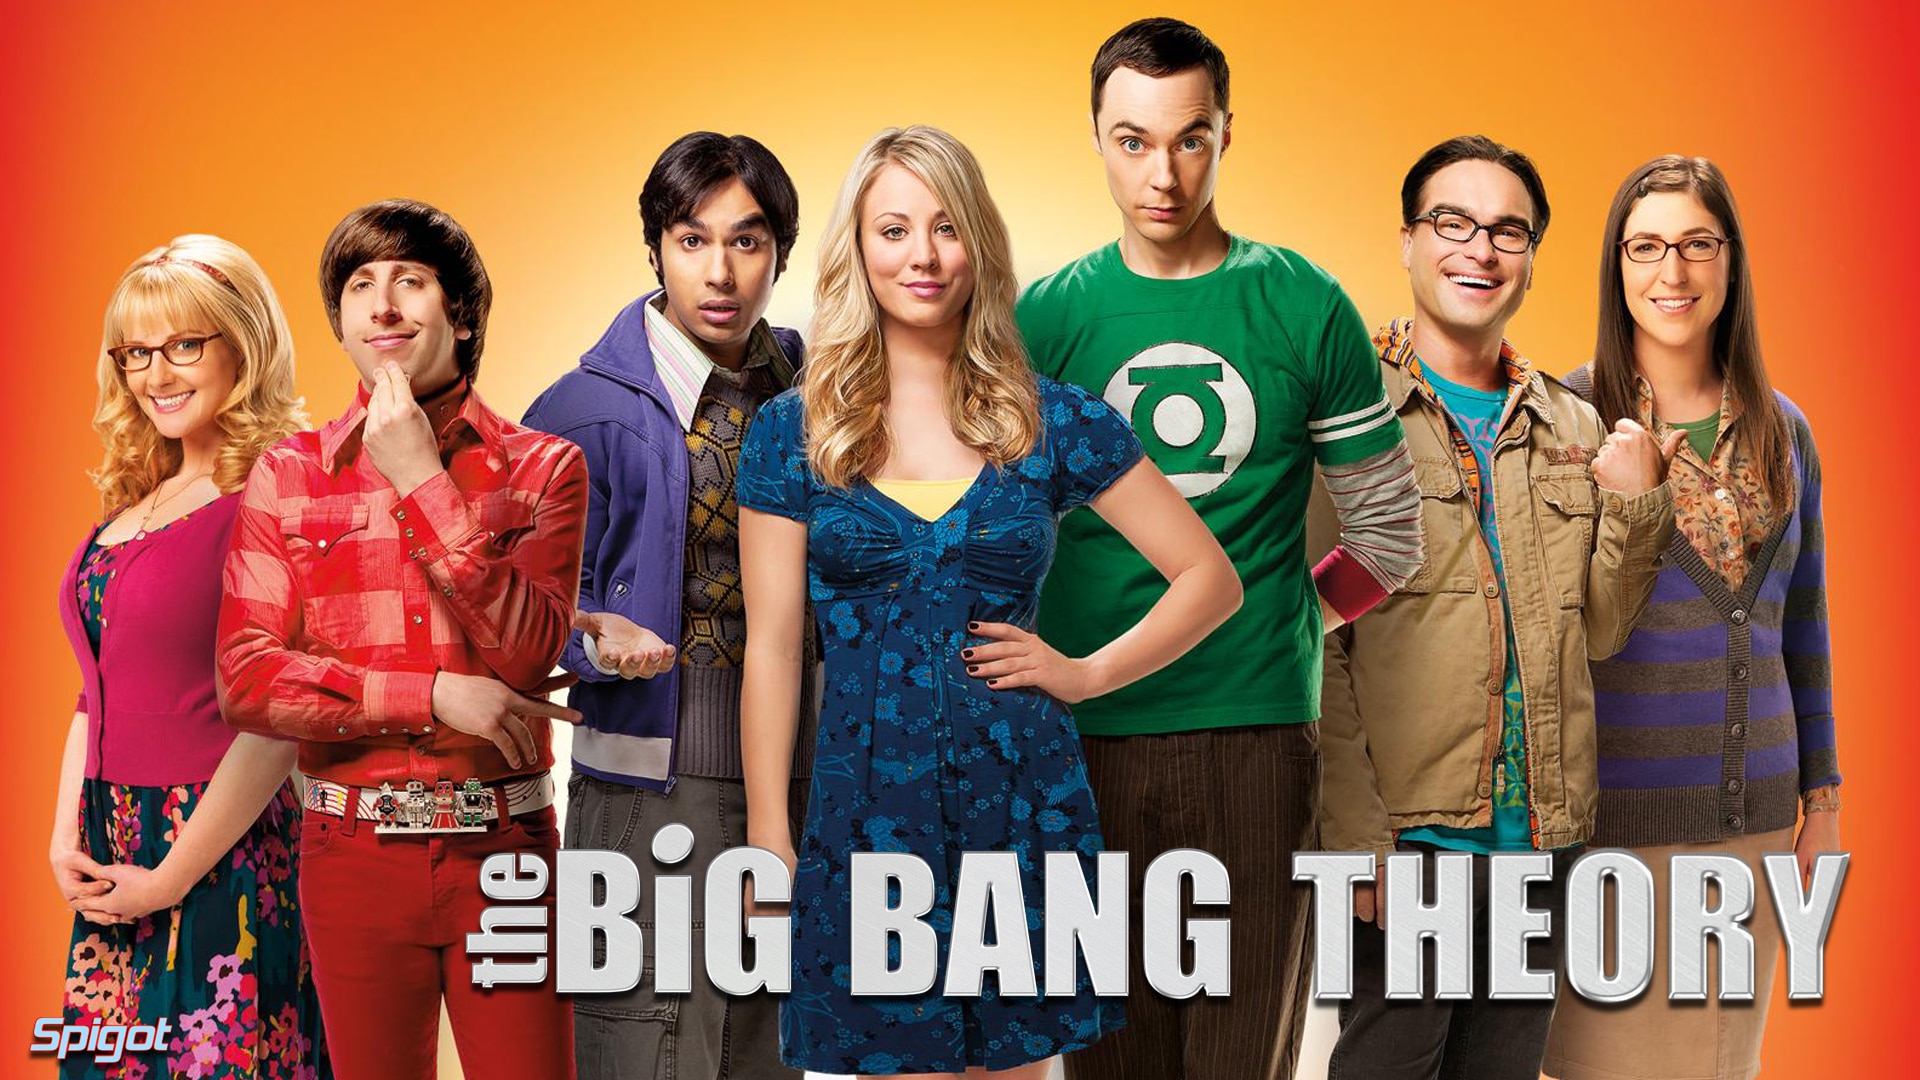 Big Bang Theory inarrestabile: rinnovata per altre 2 stagioni!